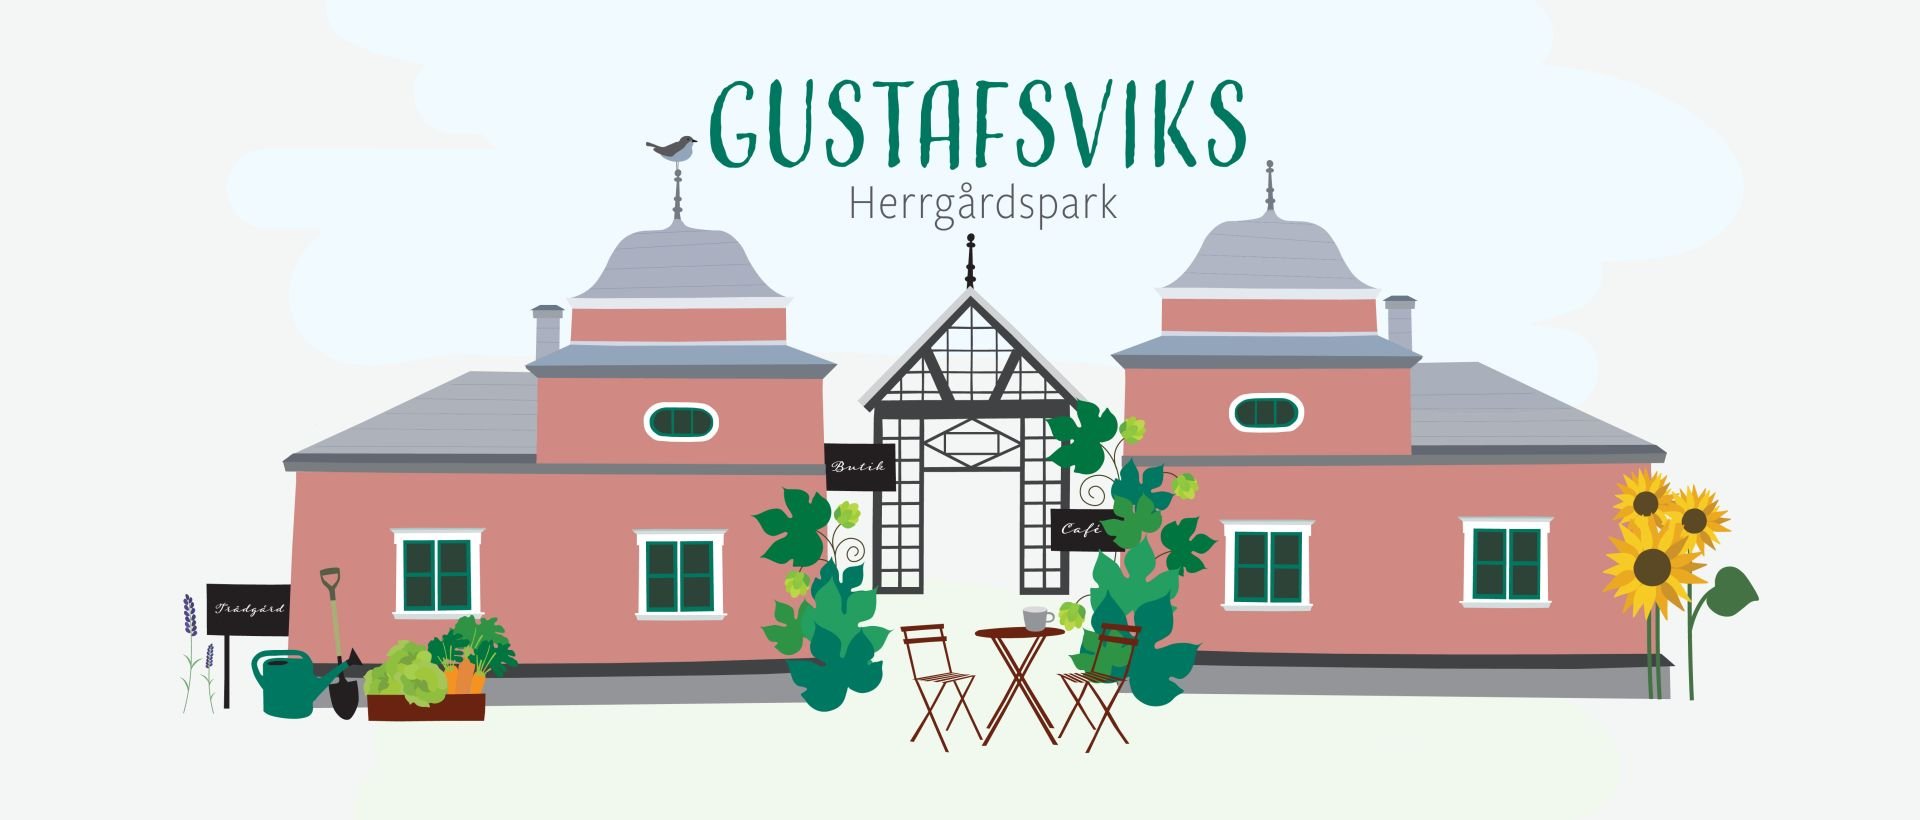 Gustafsviks Manor Park